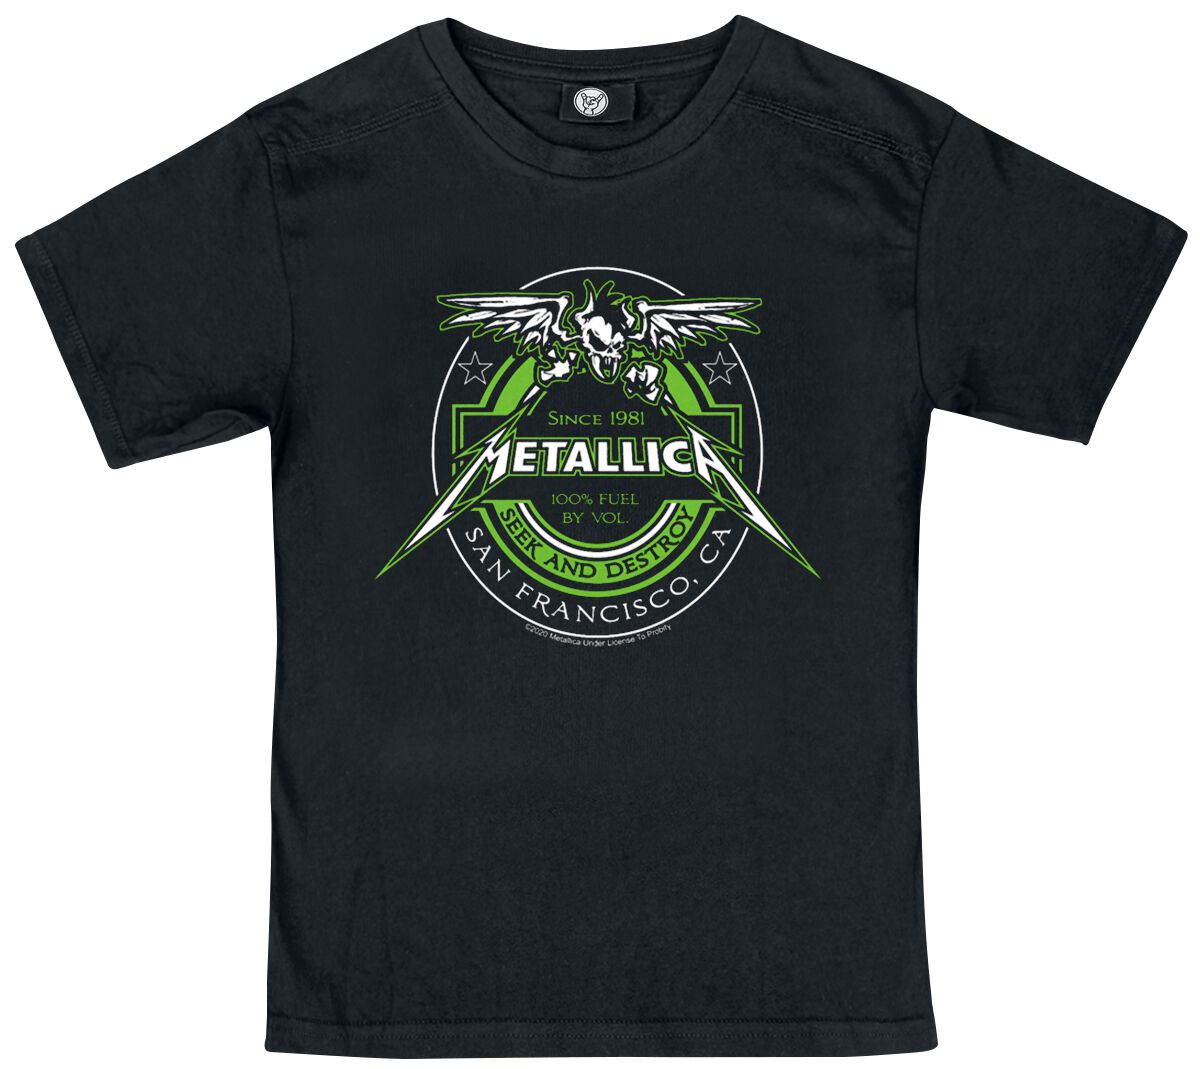 Metallica T-Shirt - Metal-Kids - Fuel - 92 bis 164 - für Mädchen & Jungen - Größe 164 - schwarz  - Lizenziertes Merchandise!